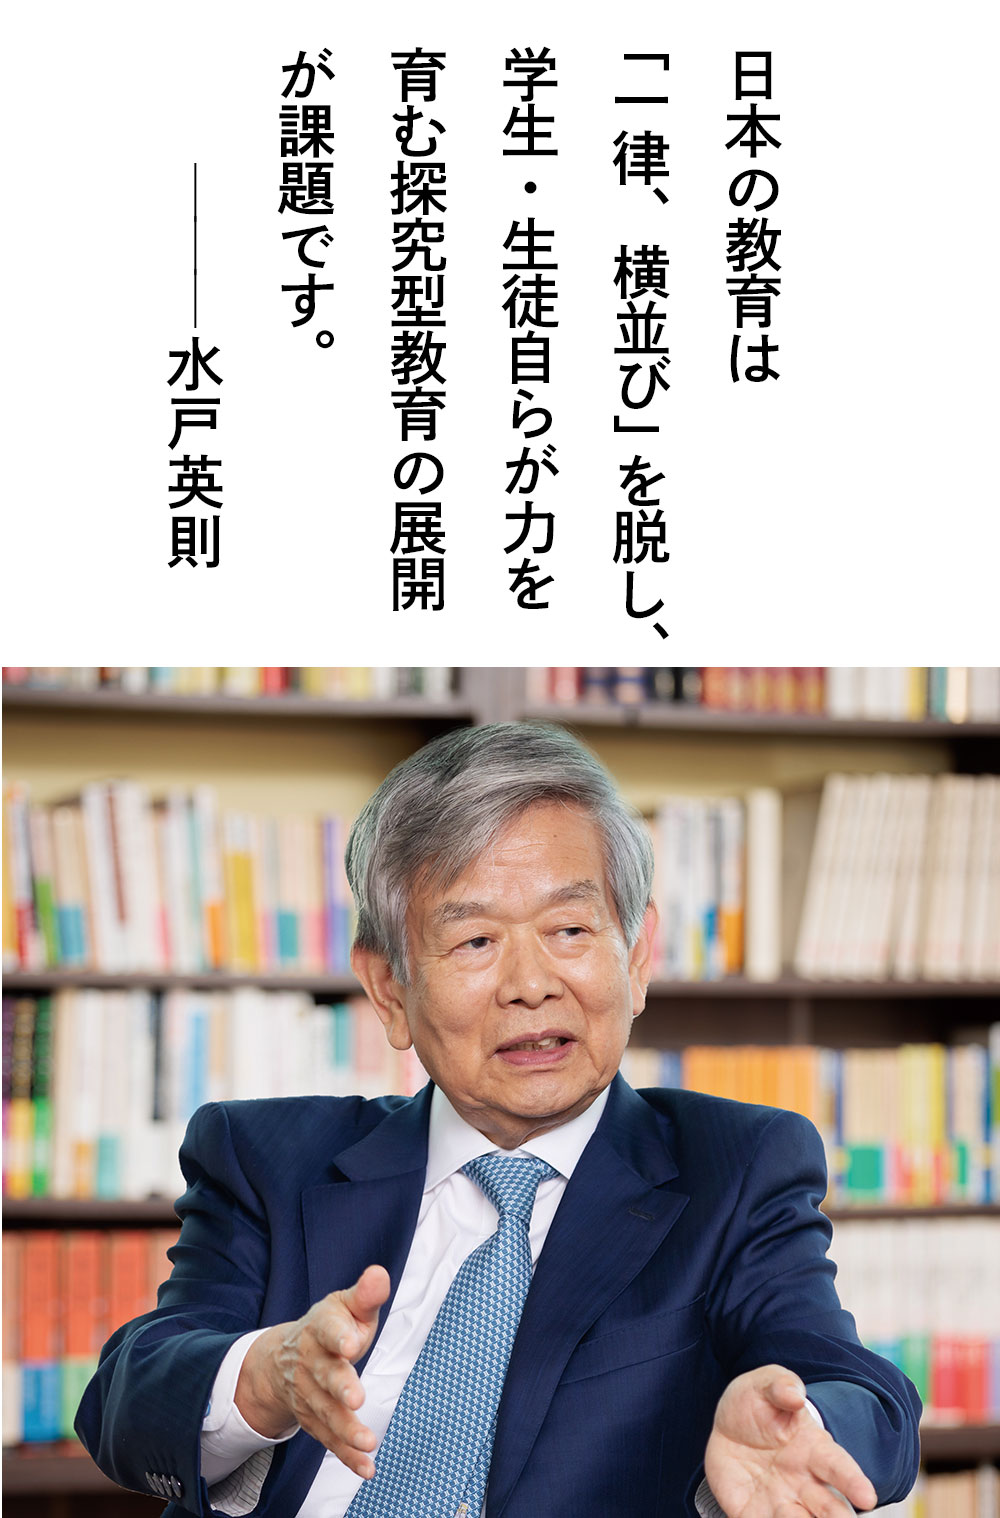 日本の教育は「一律、横並び」を脱し、学生・生徒自らが力を育む探究型教育の展開が課題です。——水戸英則